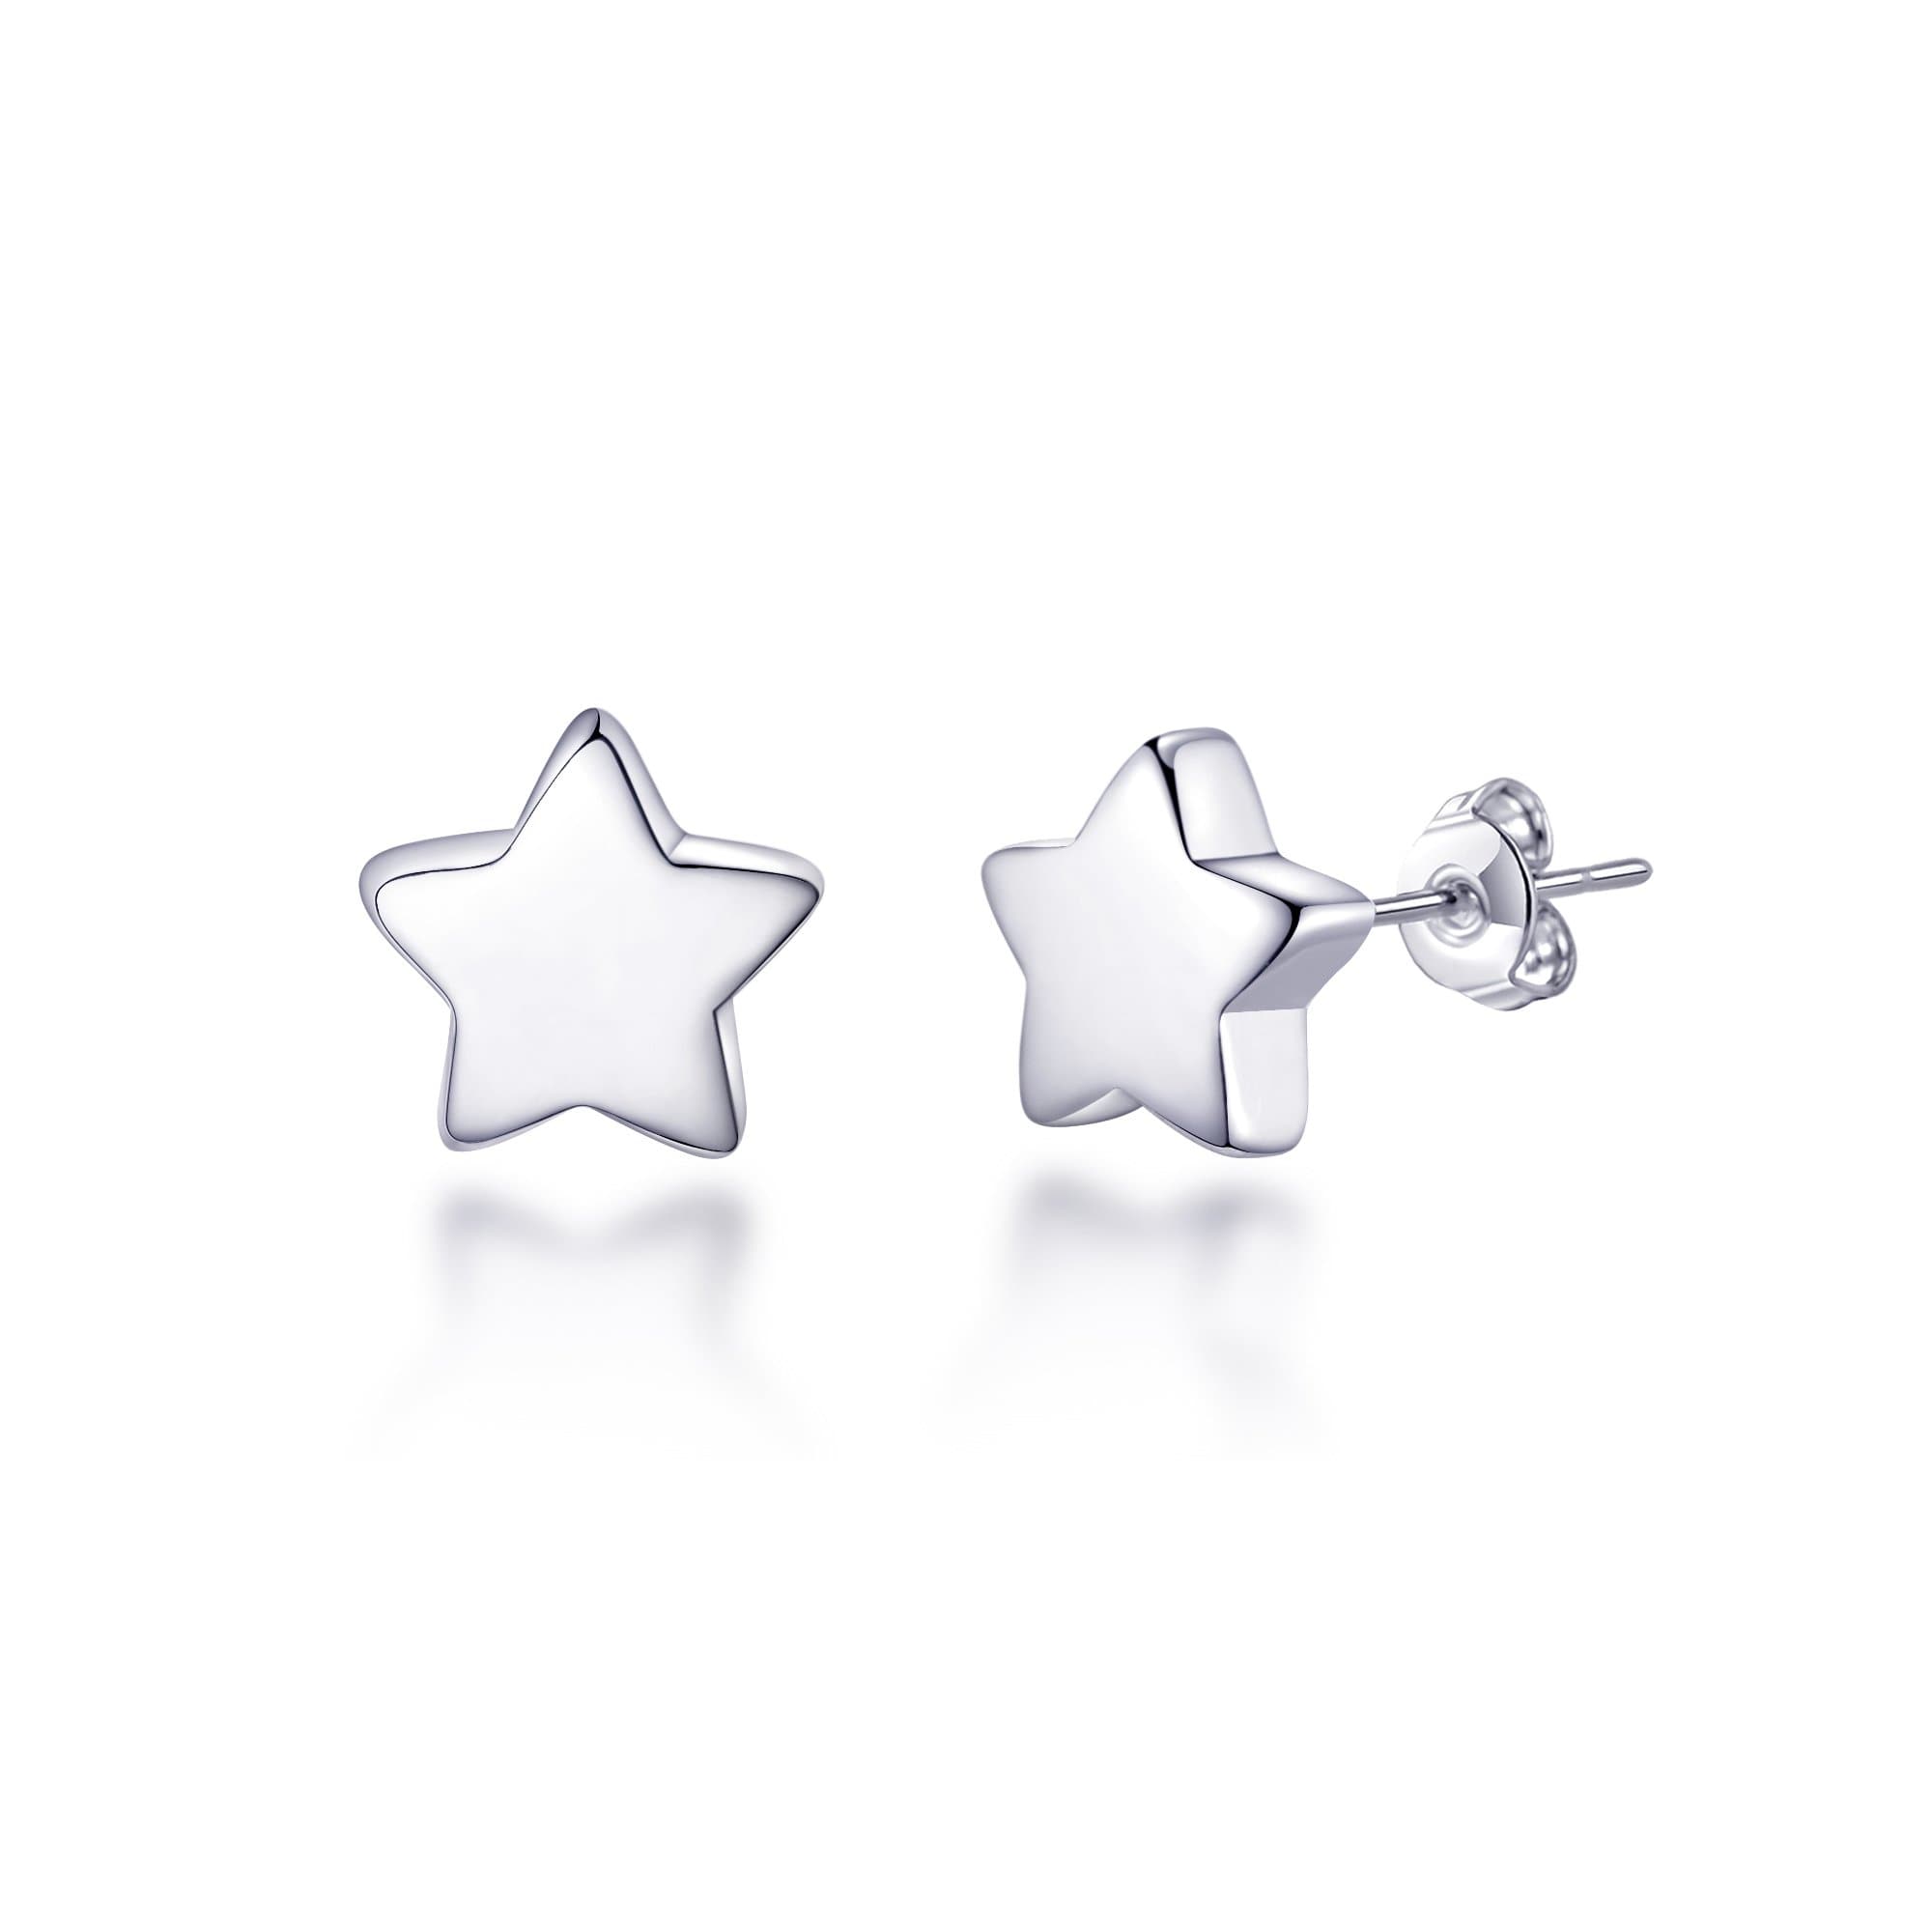 Sterling Silver Star Earrings by Philip Jones Jewellery